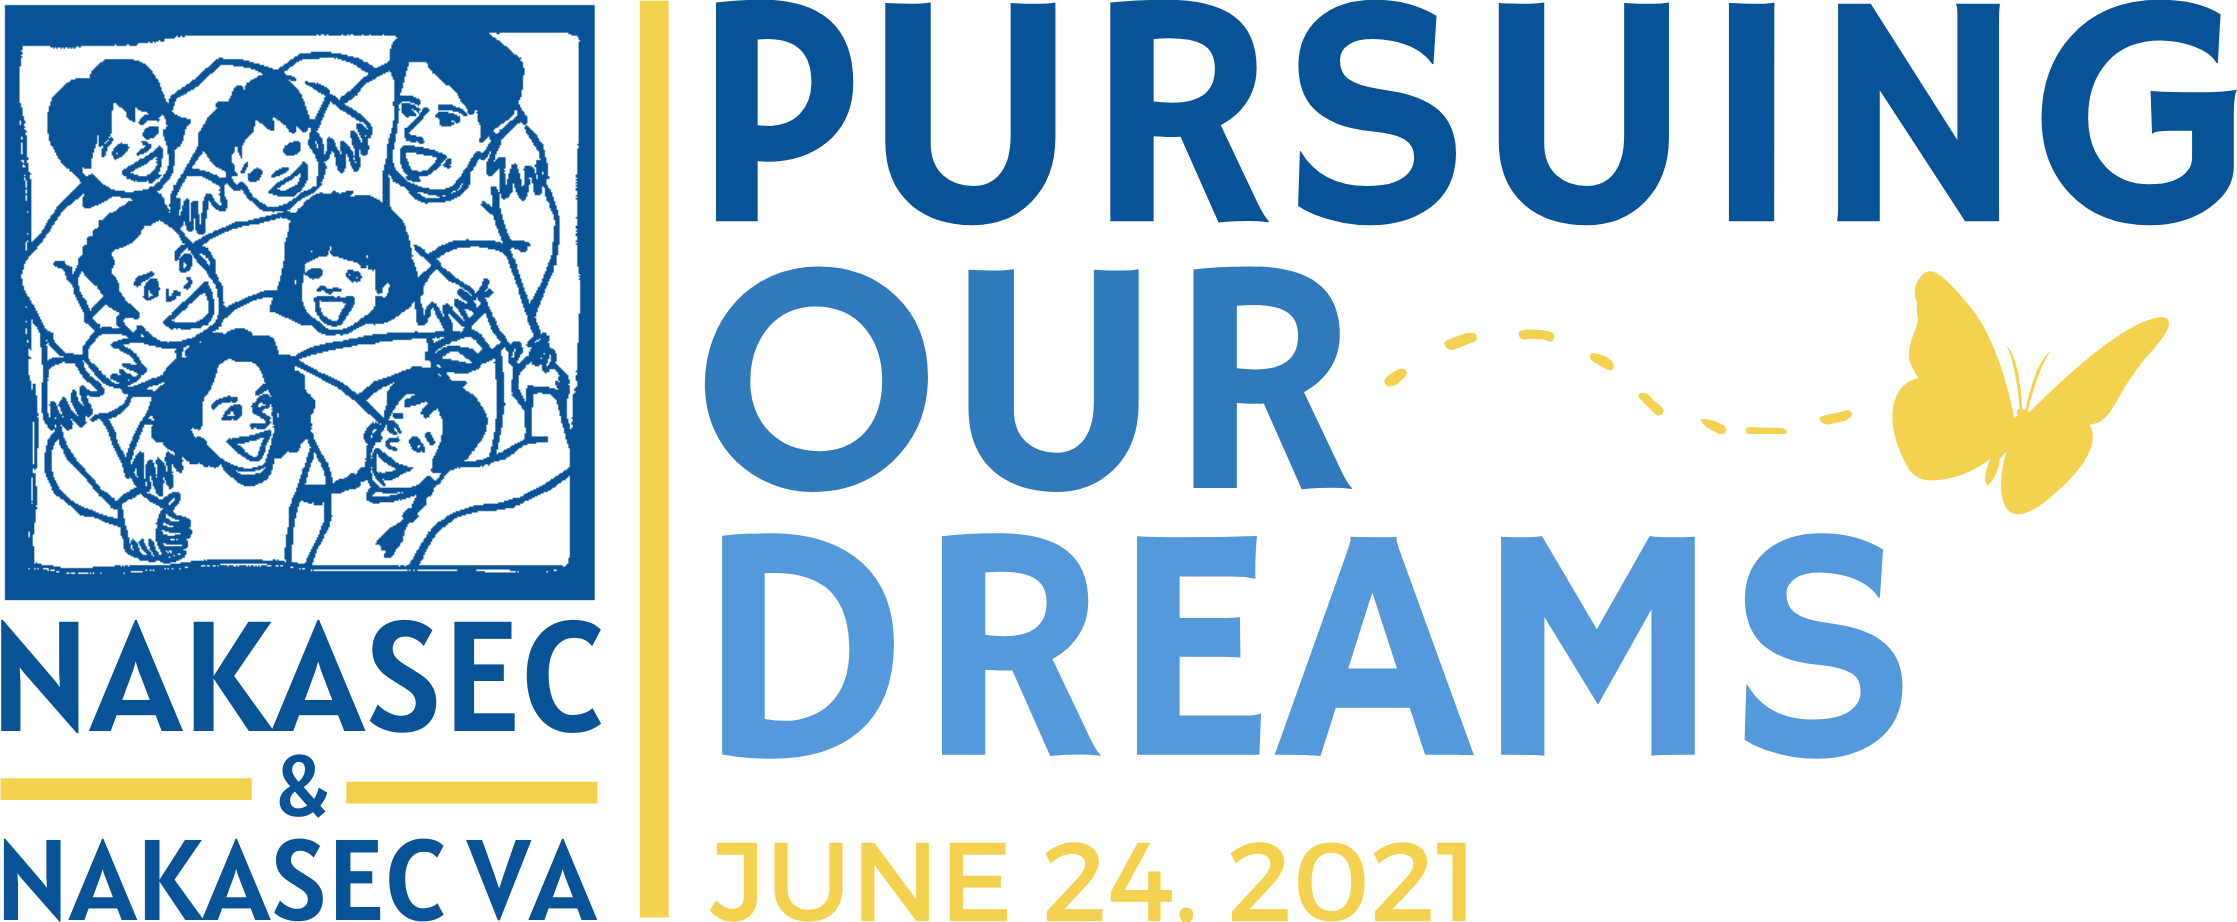 NAKASEC & NAKASEC VA - Pursuing Our Dreams Fundraiser (June 24, 2021)